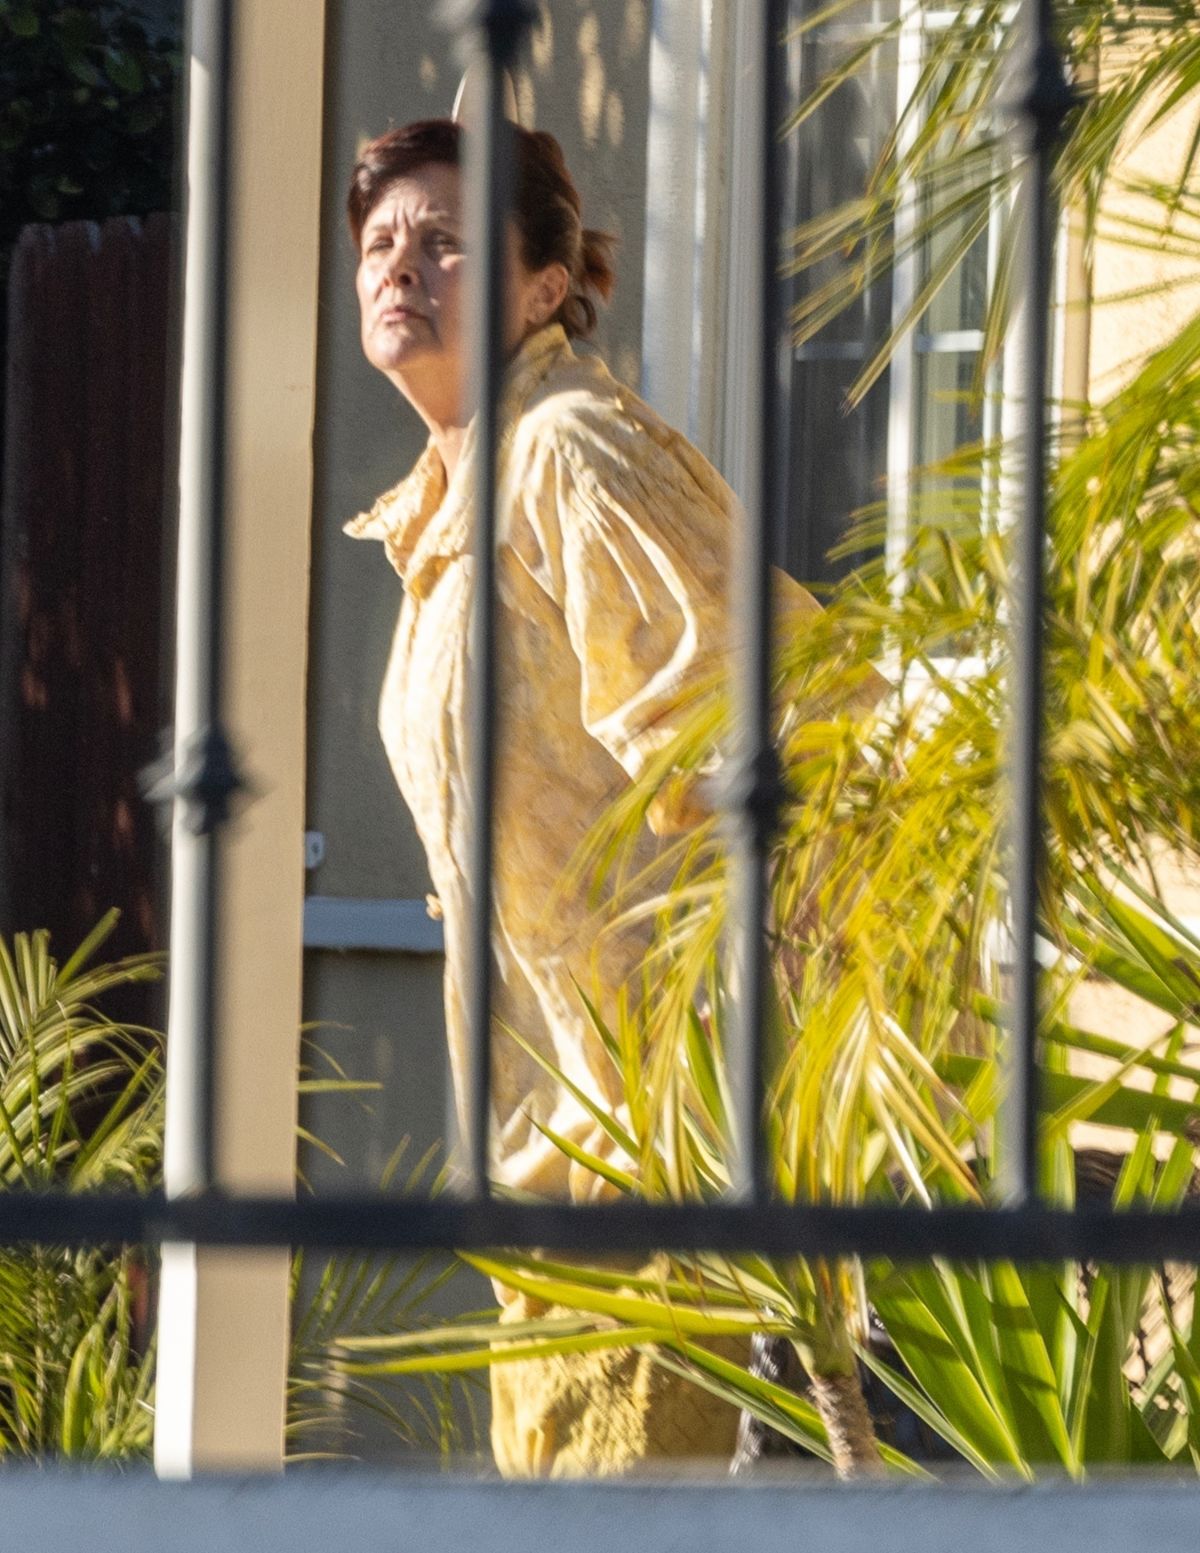 SHERILYN FENN Enjoying a Smoke Outside Her Home in Los Angeles 01/11 ...